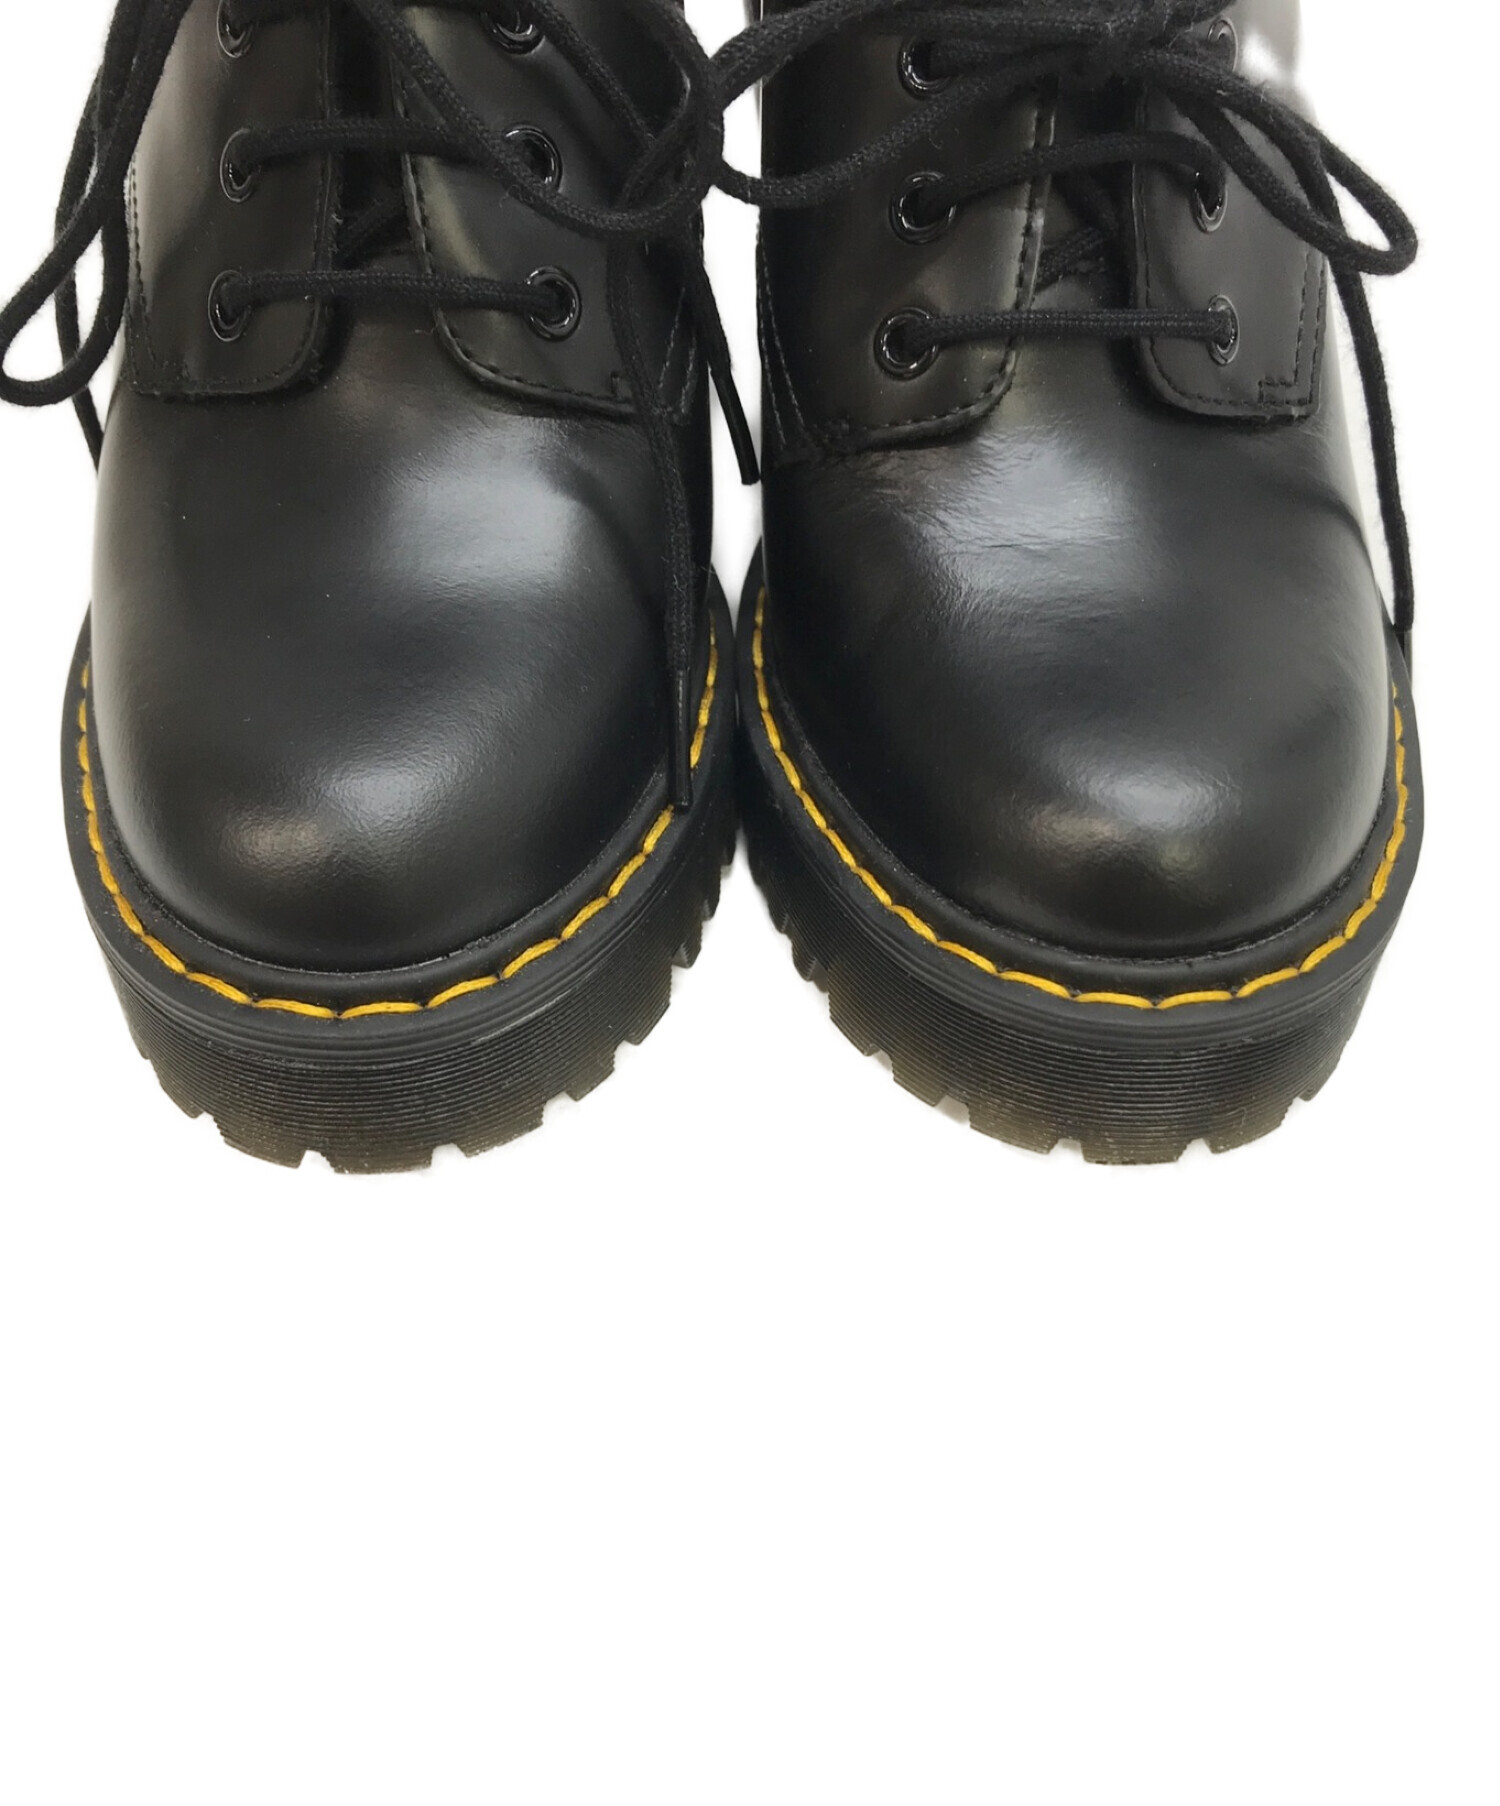 高価値セリー Dr.Martens SEIRENE SALOME UK3 確実正規品 靴 